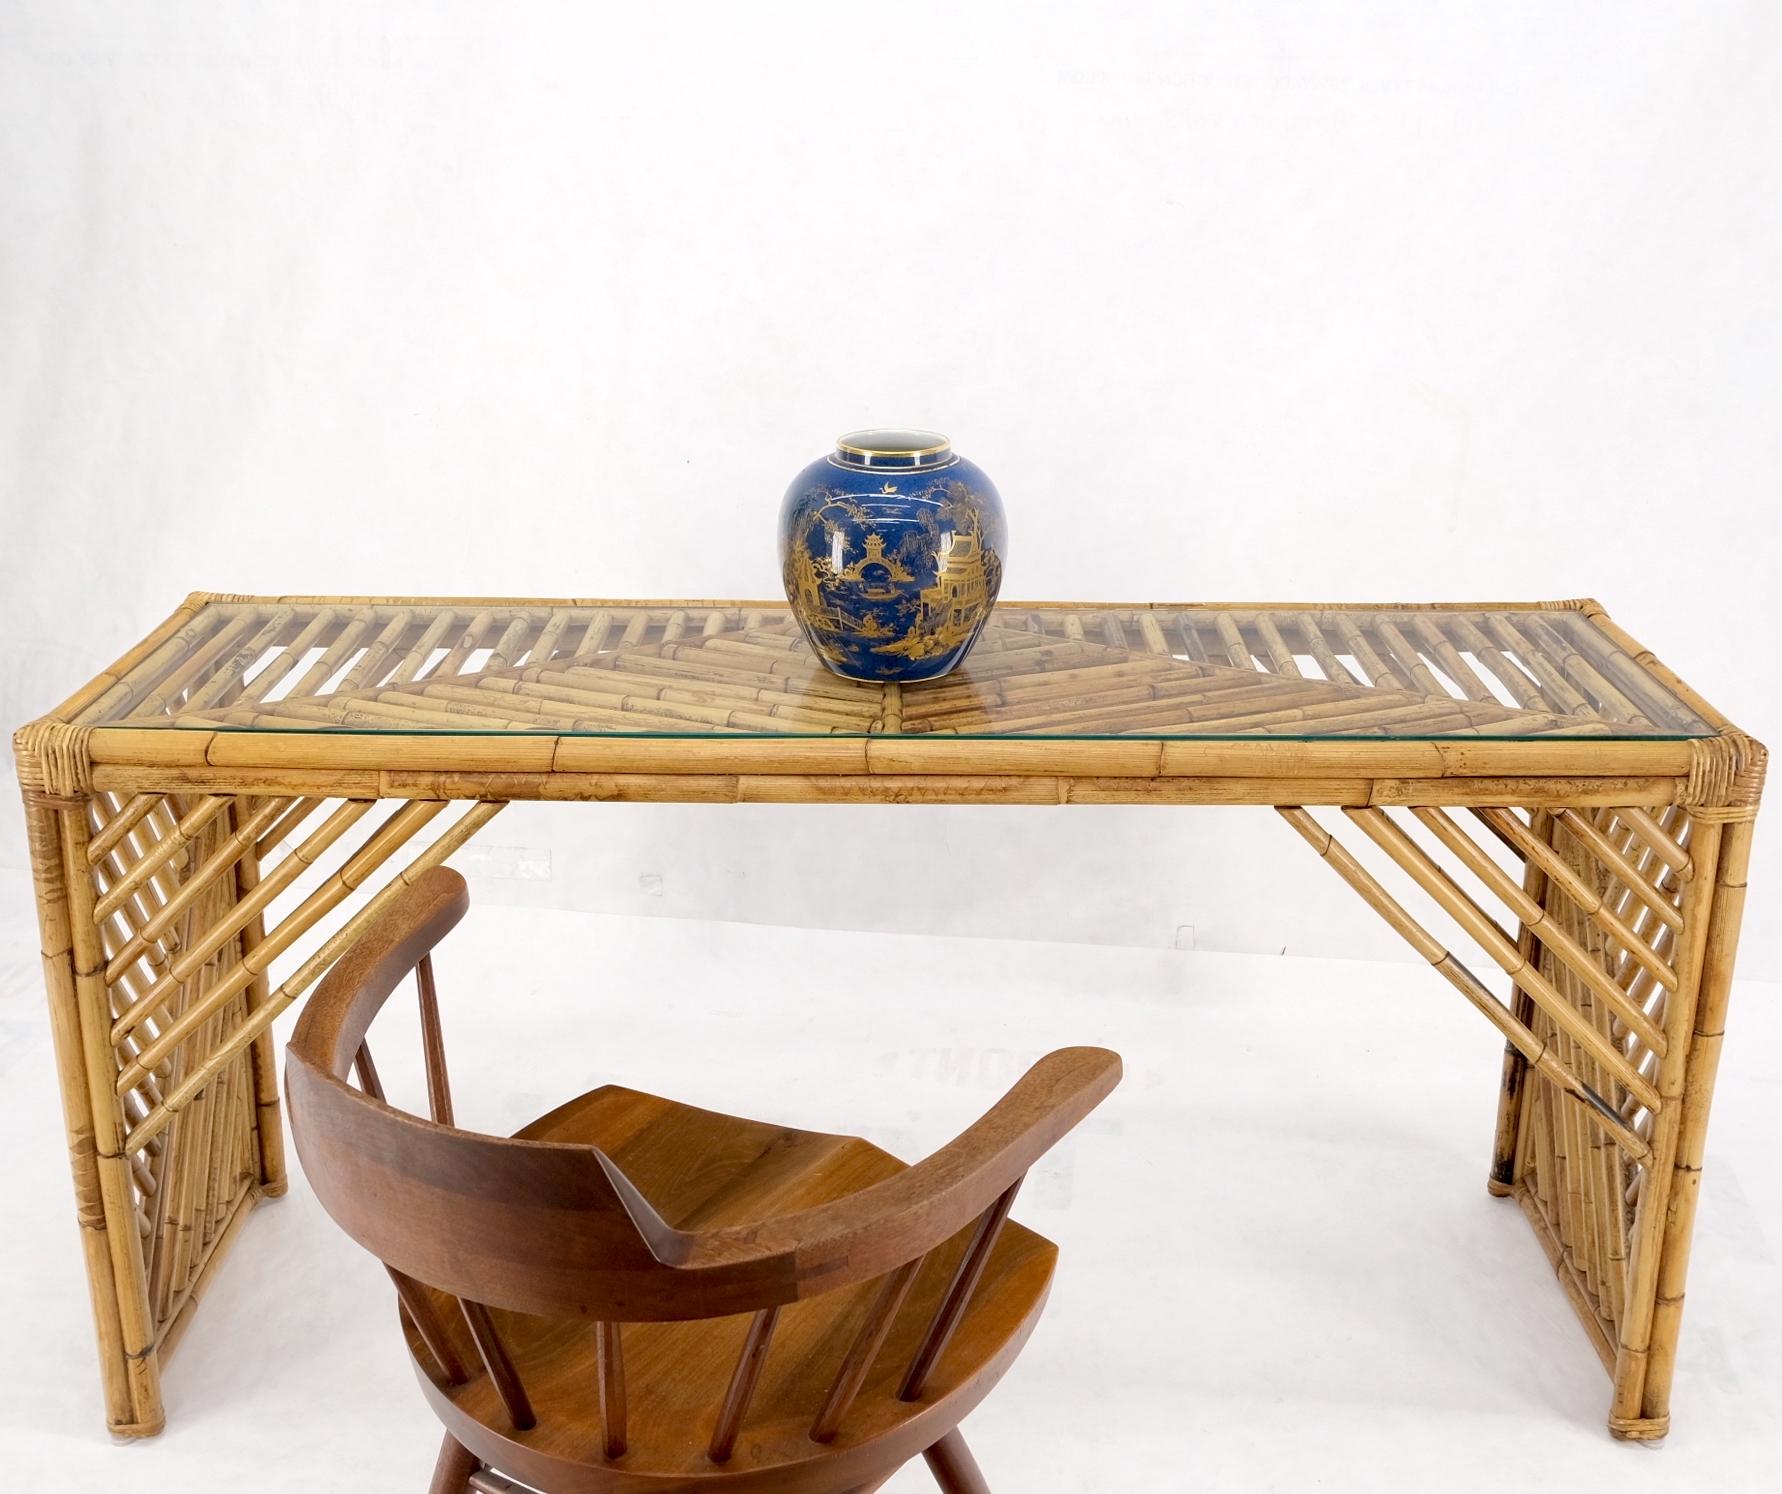 Table console de canapé en bambou et rotin avec plateau en verre.
Ficks Reed, McGuire decor match.